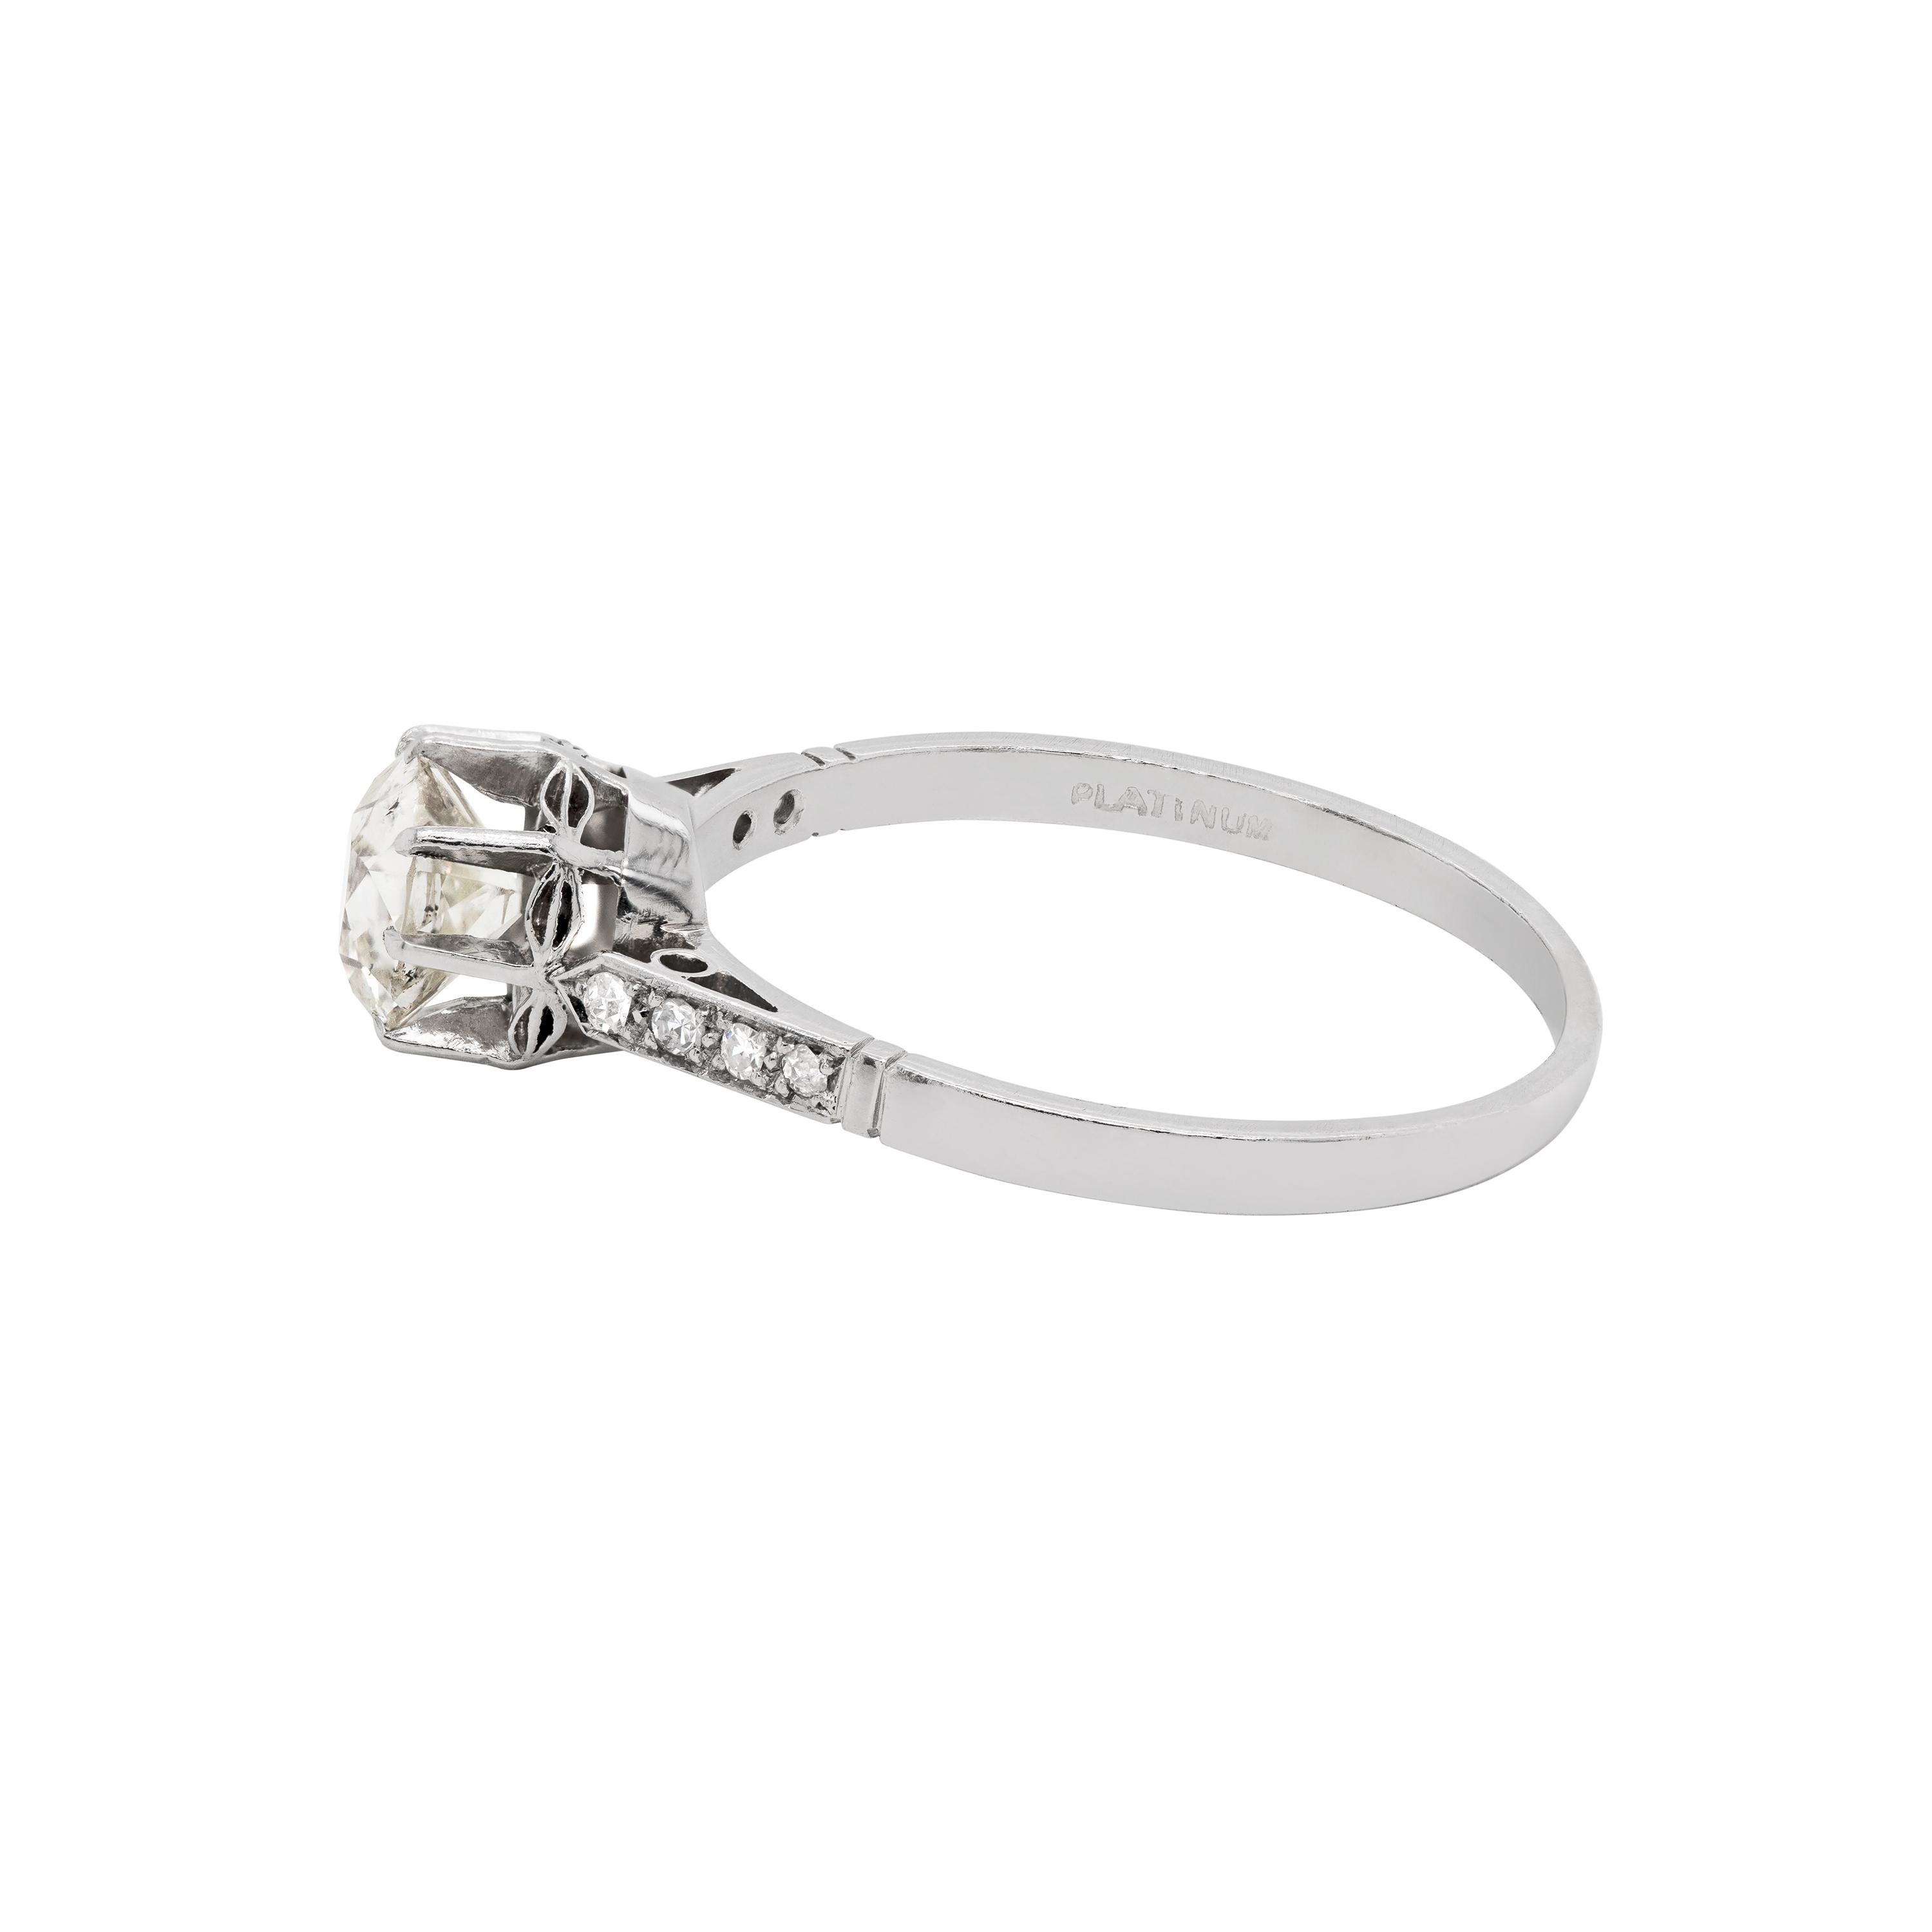 1.7 carat diamond ring price